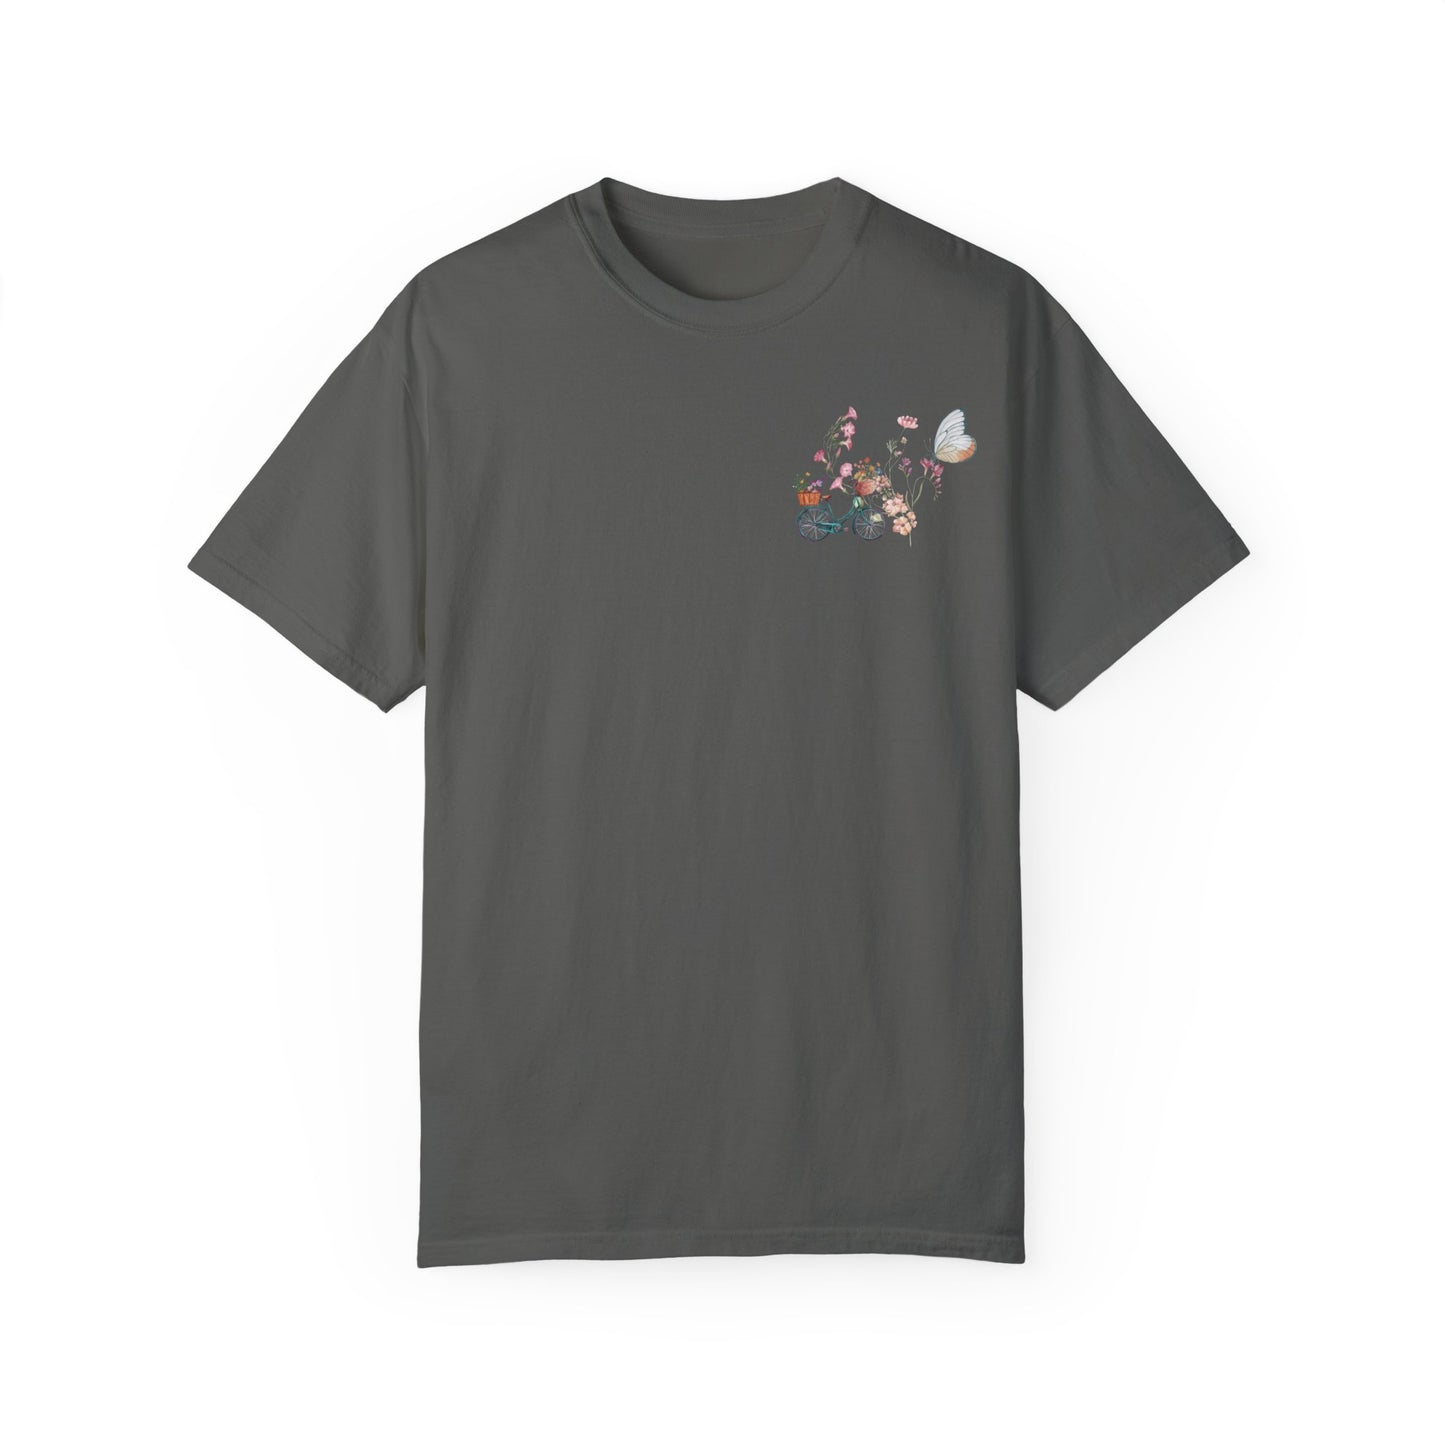 T-Shirt mit Wildblumen-Print auf der Rückseite und kleinem Design auf der Vorderseite.